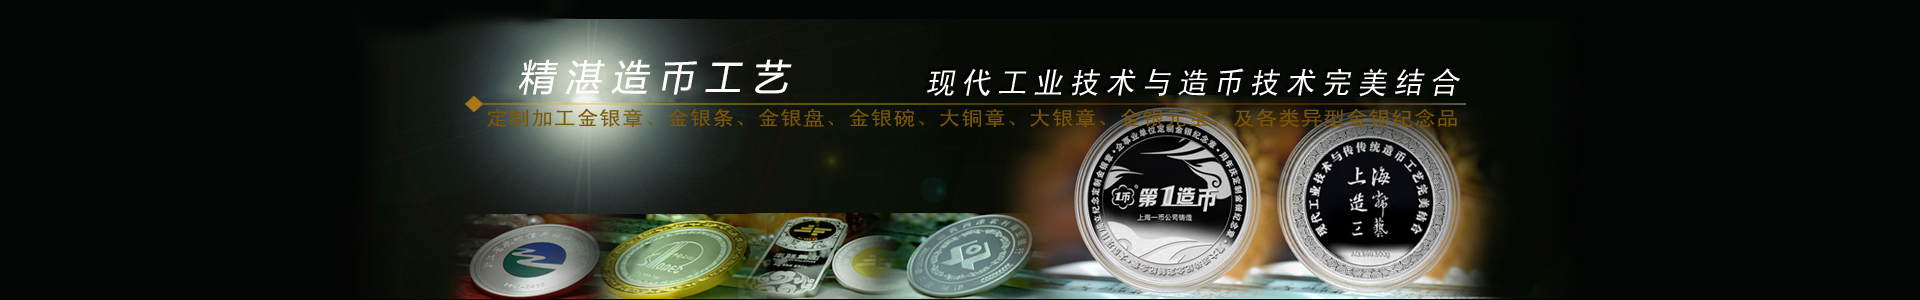 生肖纪念币_十二生肖纪念币_十二生肖纪念币价格表_上海造币厂